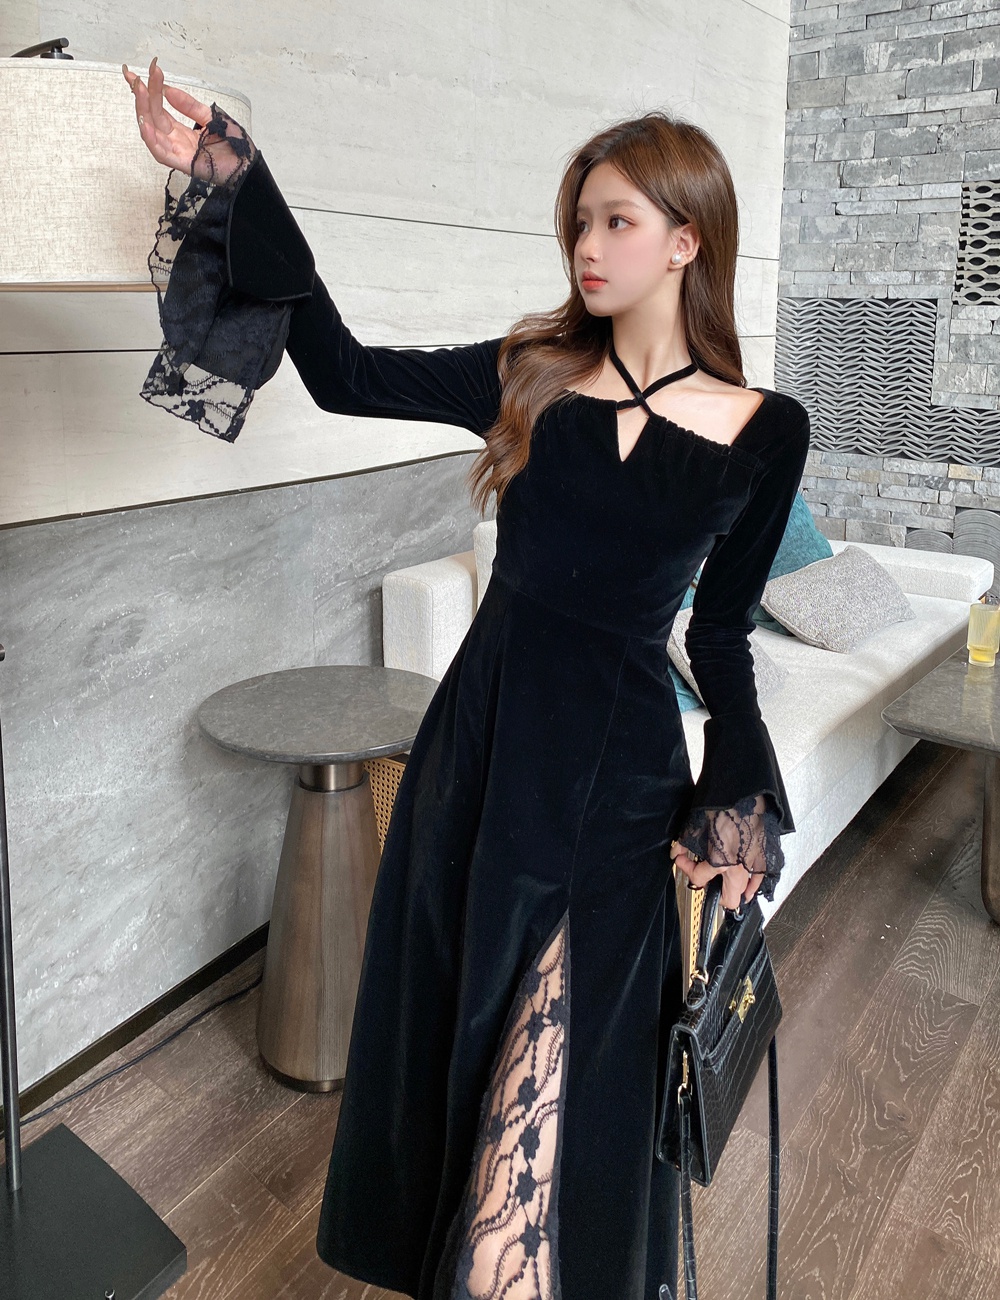 Black lace velvet halter large yard split dress for women